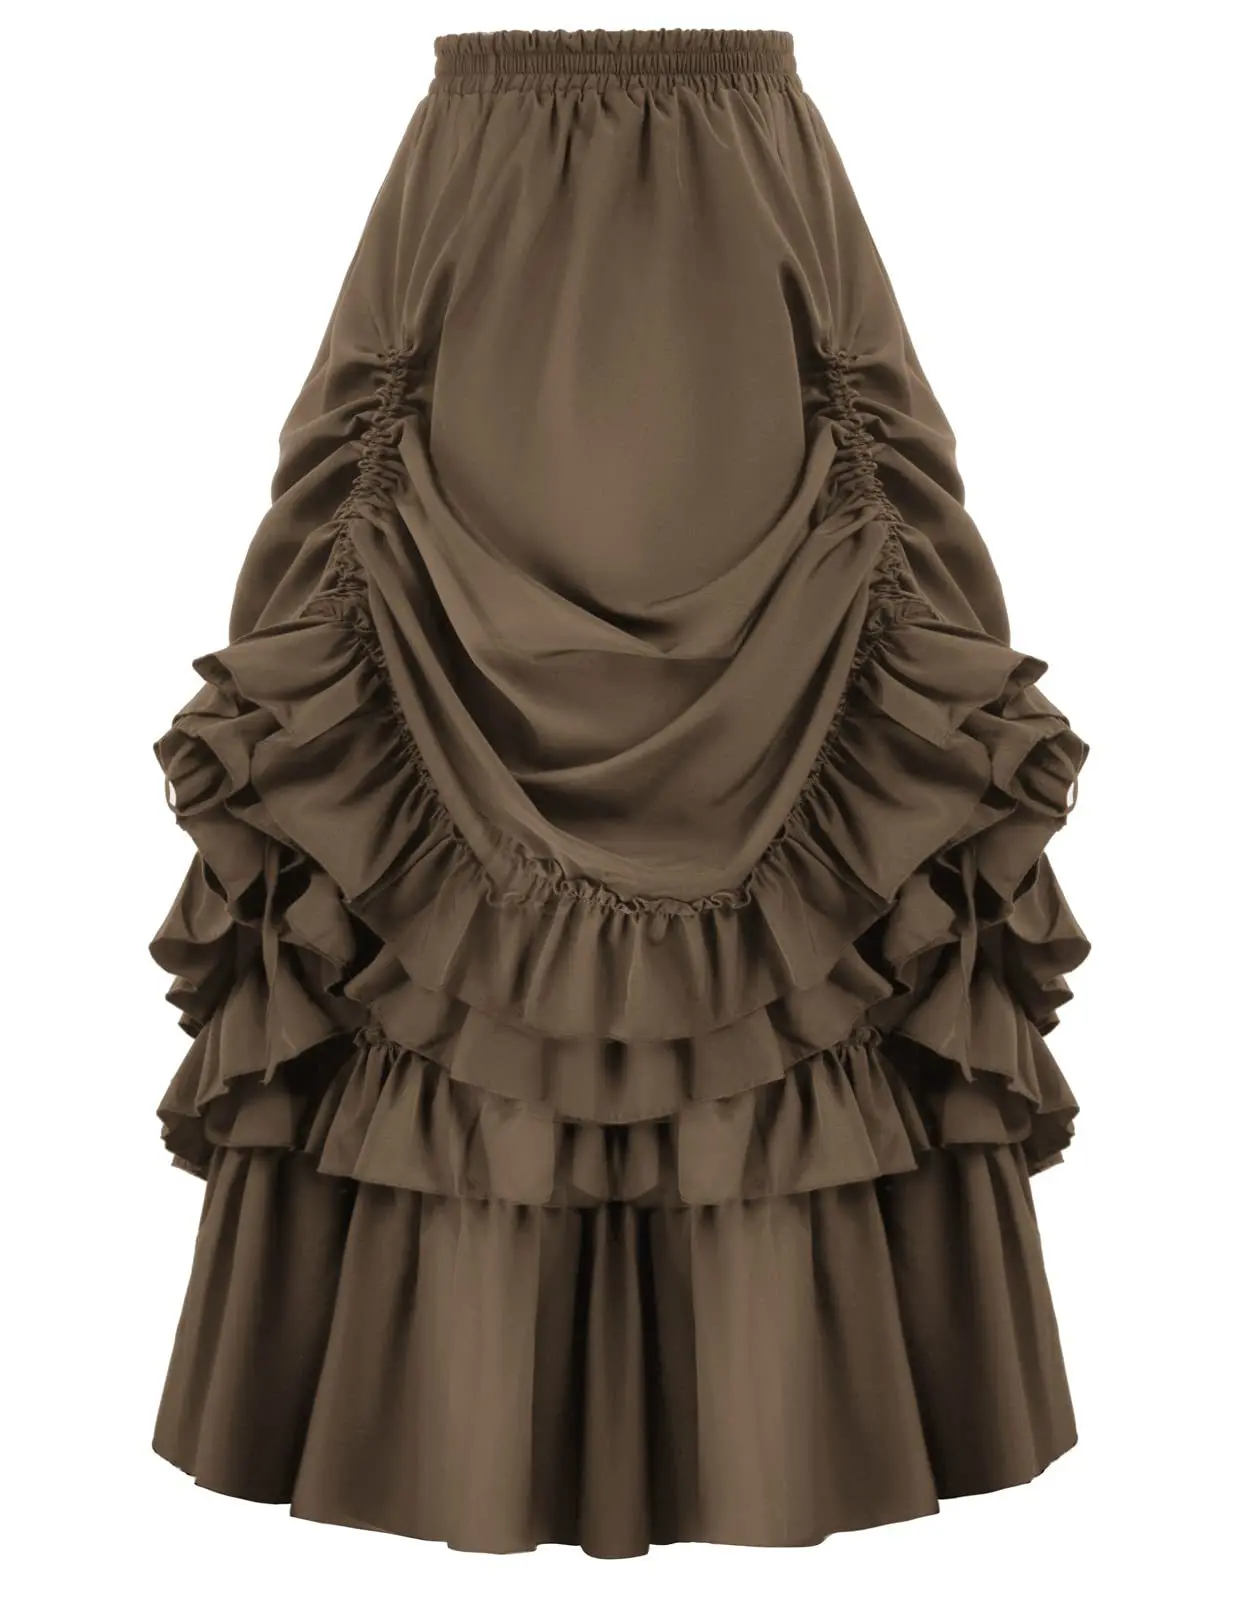 

Женская юбка винтажная юбка среднего возраста Готическая викторианская юбка эпохи Возрождения средневековые костюмы для косплея женское платье